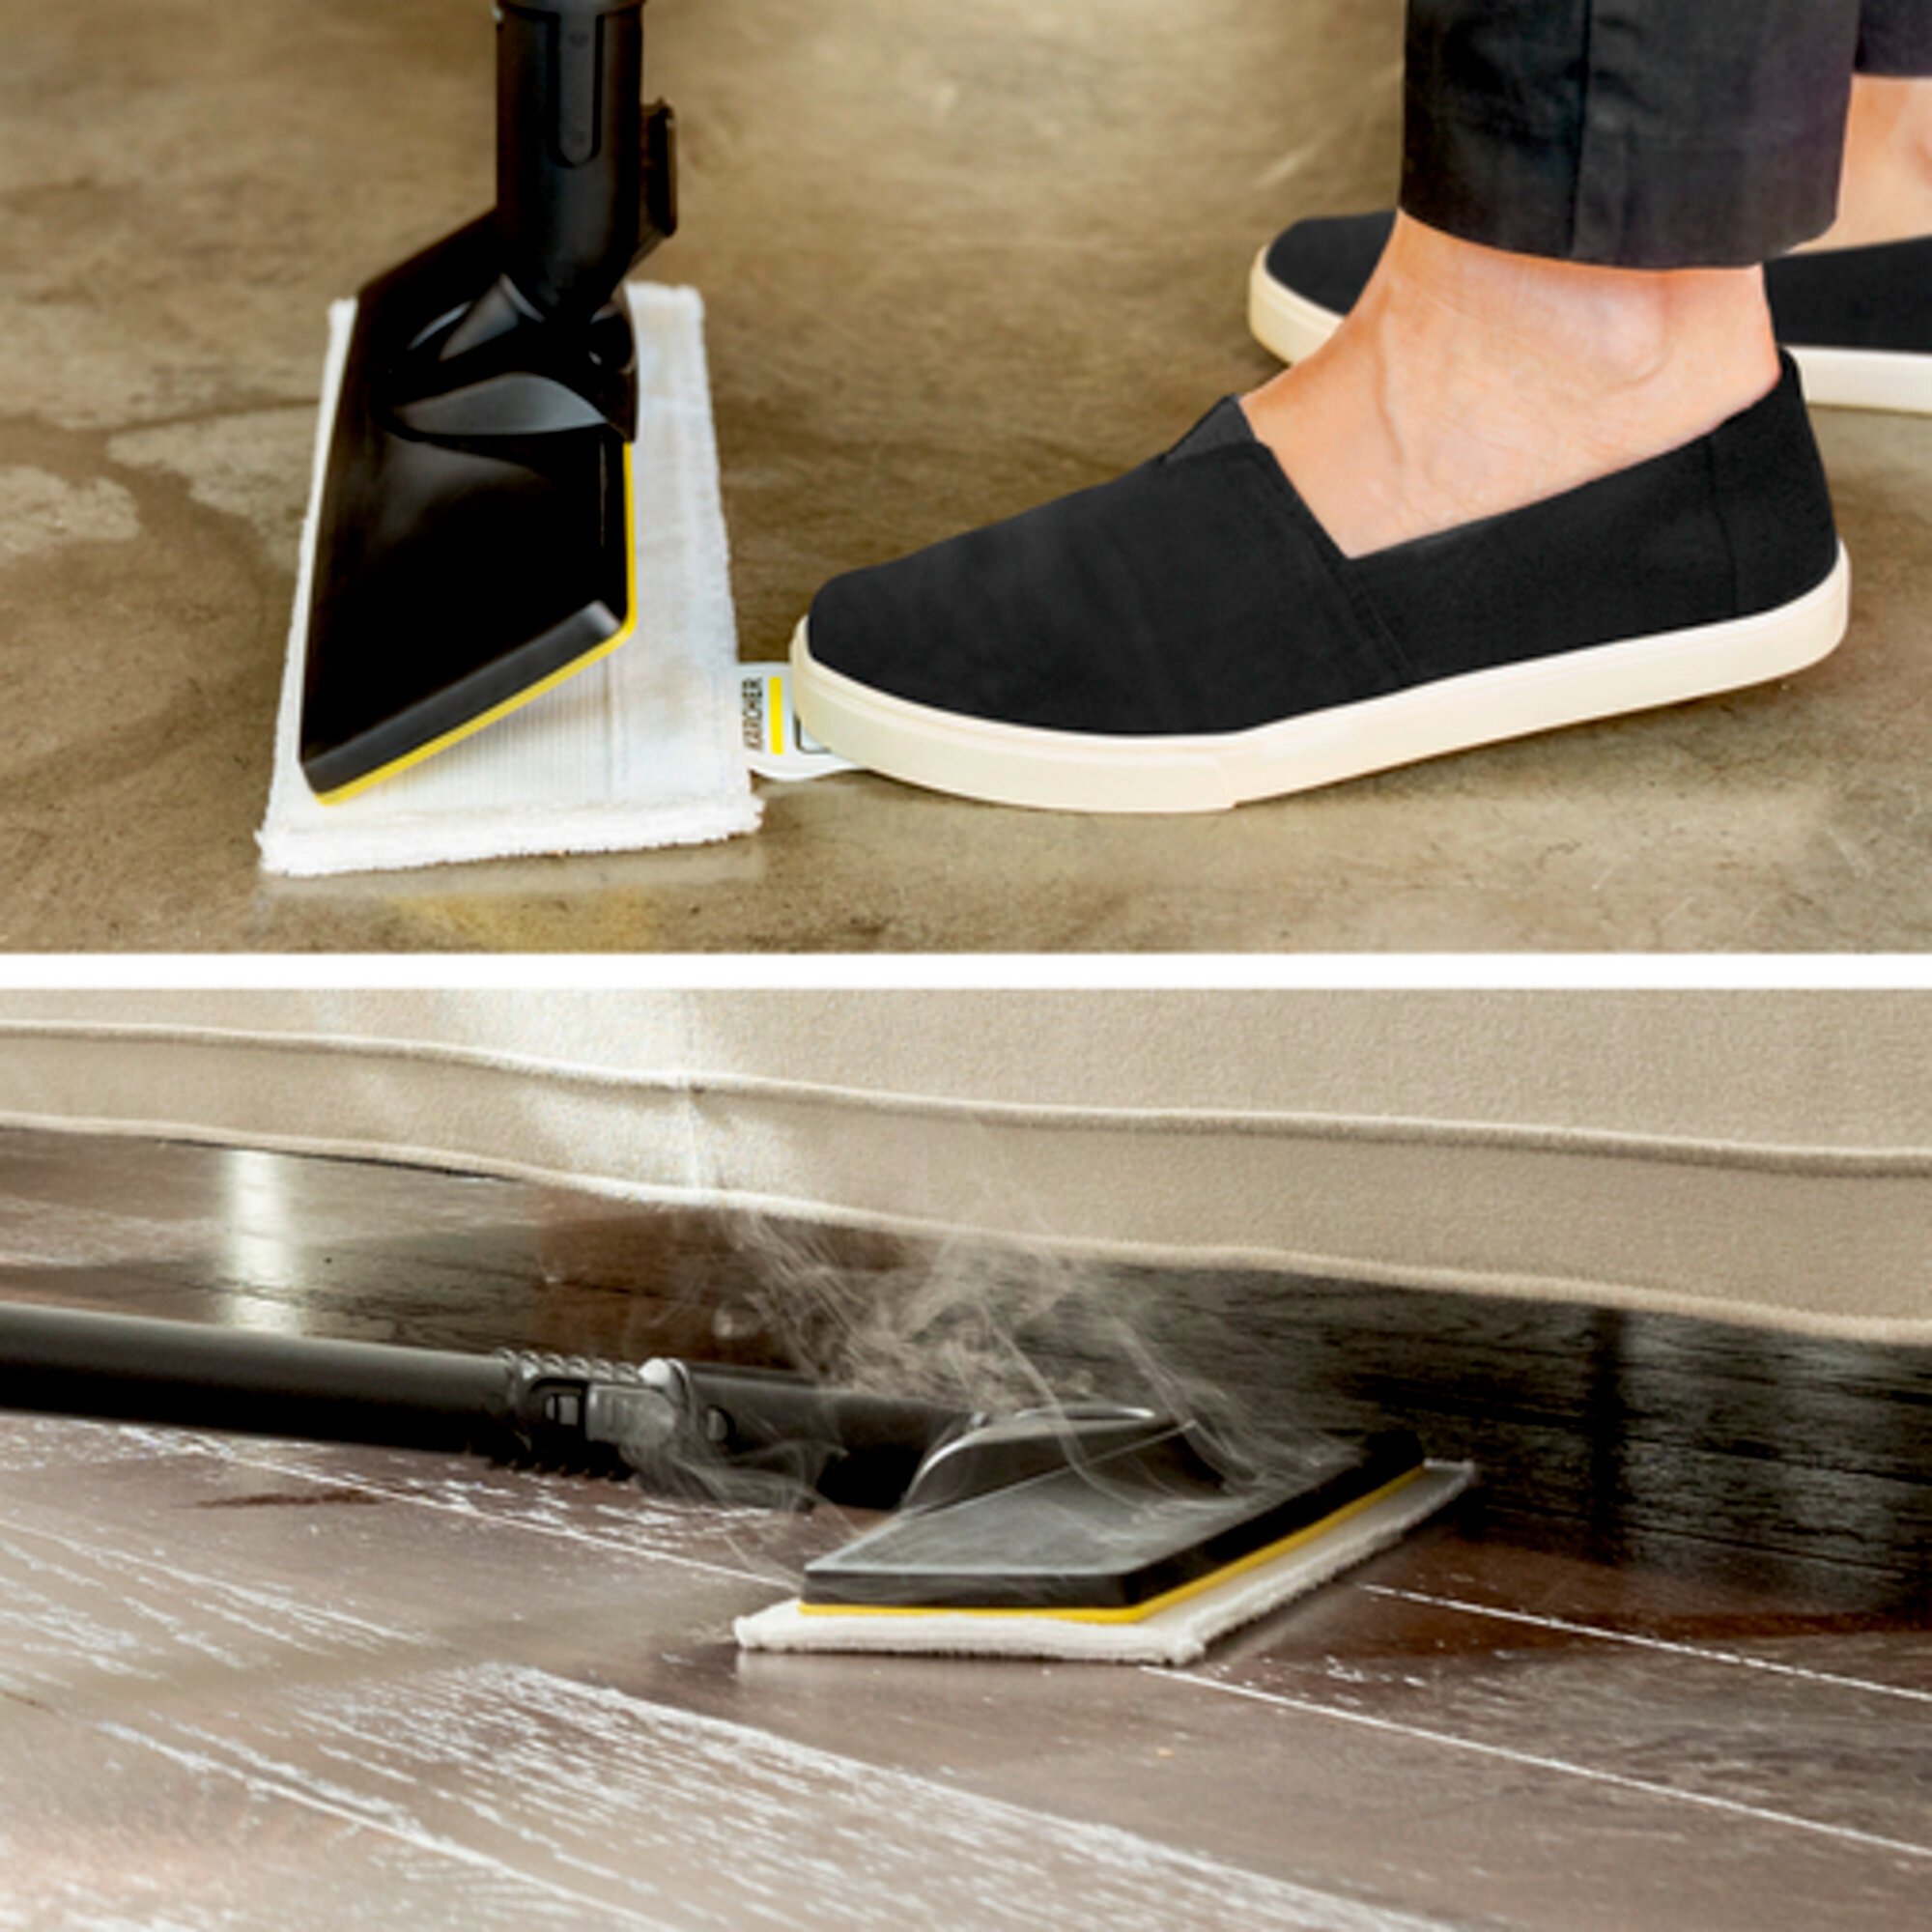 Aurupuhasti SC 4 EasyFix Iron: EasyFix põrandapuhastuskomplekt koos paindliku ühendusega põrandaotsikule ja kleepuva kinnitussüsteemiga põrandamopi jaoks.